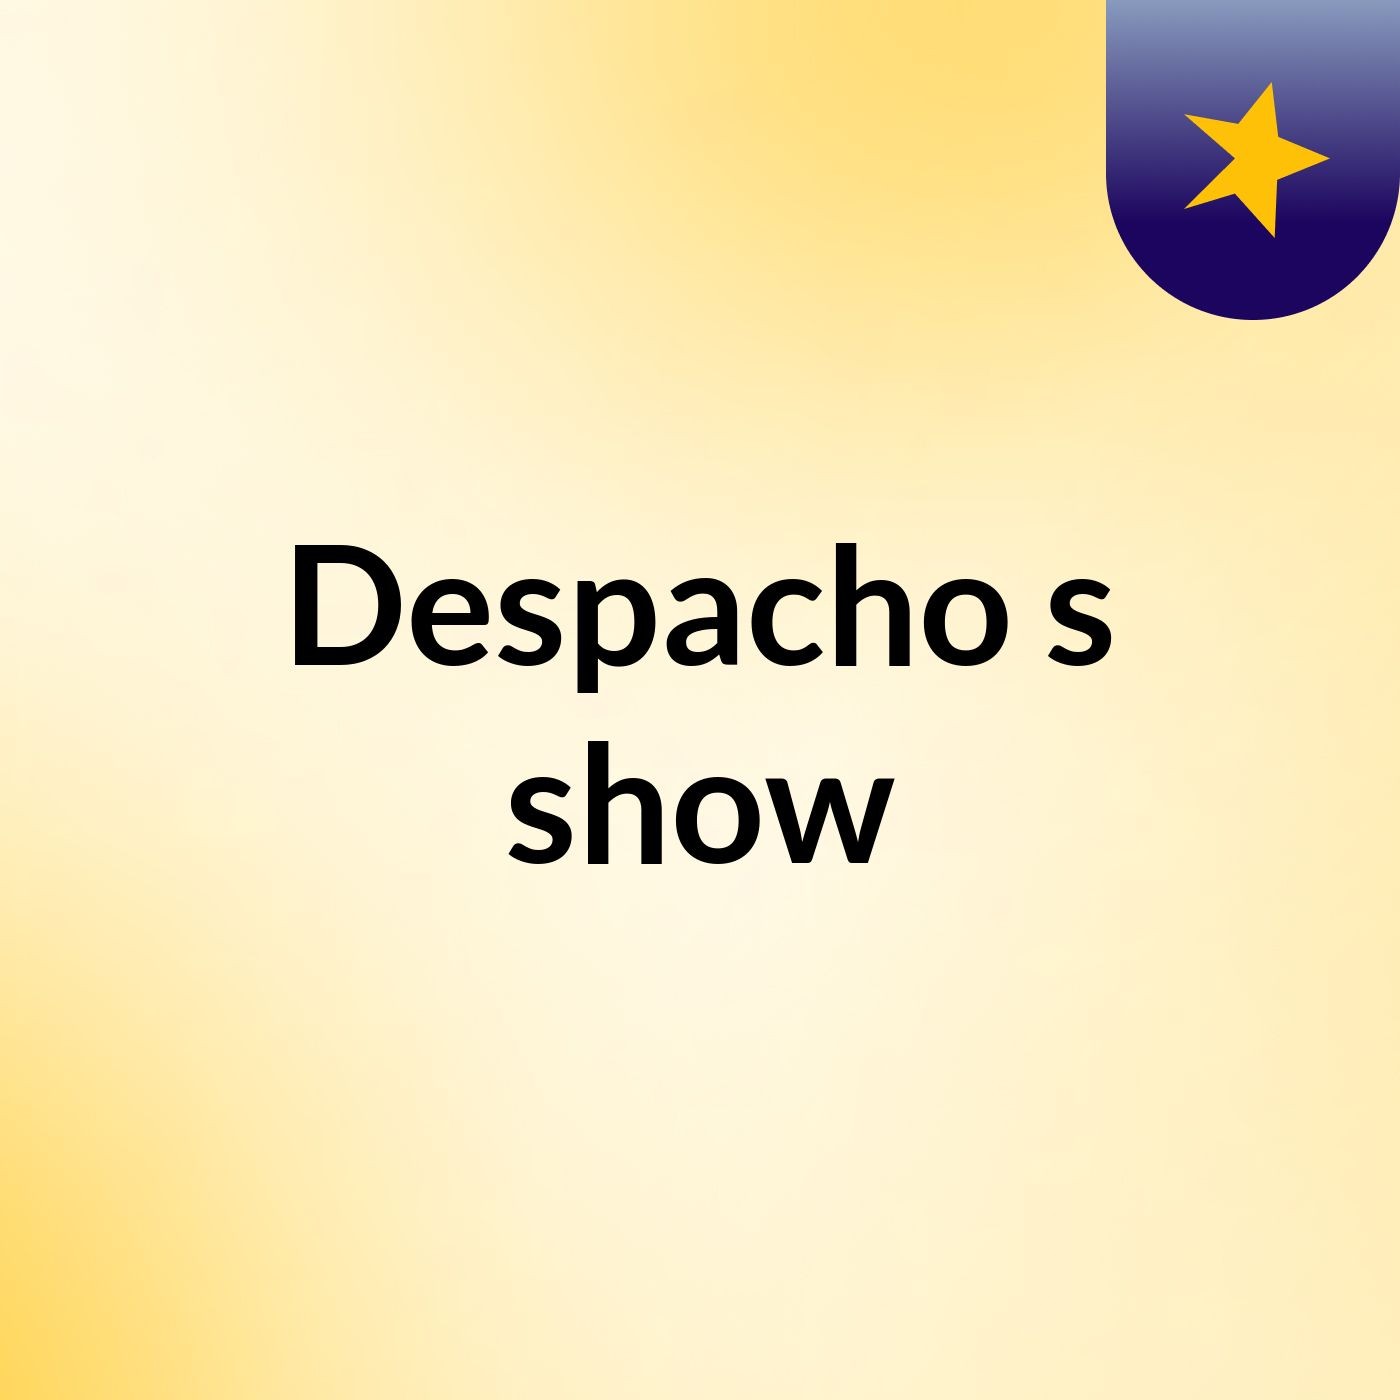 Despacho's show